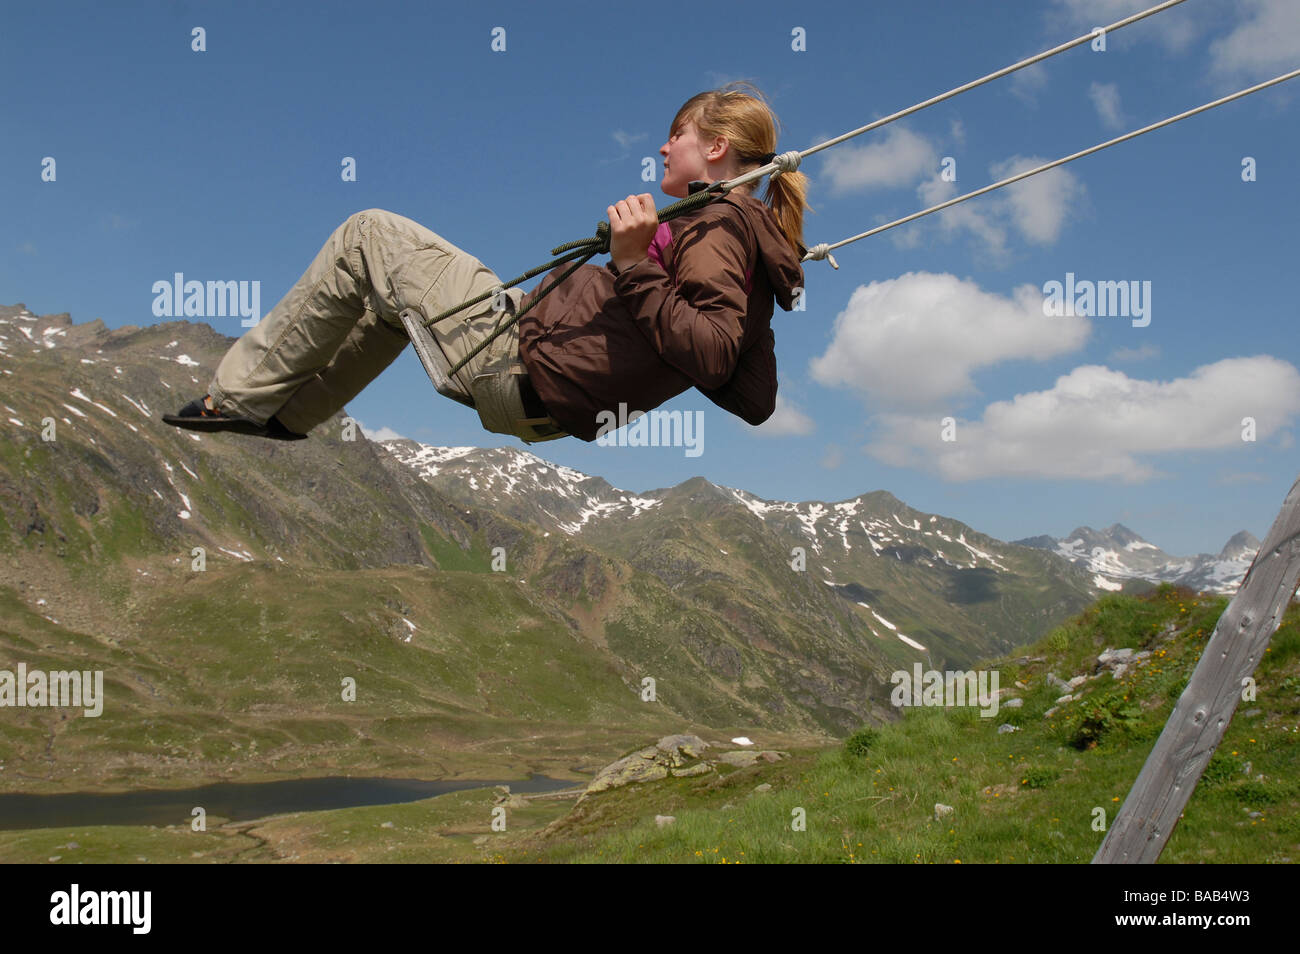 Frau auf einer Schaukel mit Bergen im Hintergrund He, Sedrun, Schweiz  Stockfotografie - Alamy